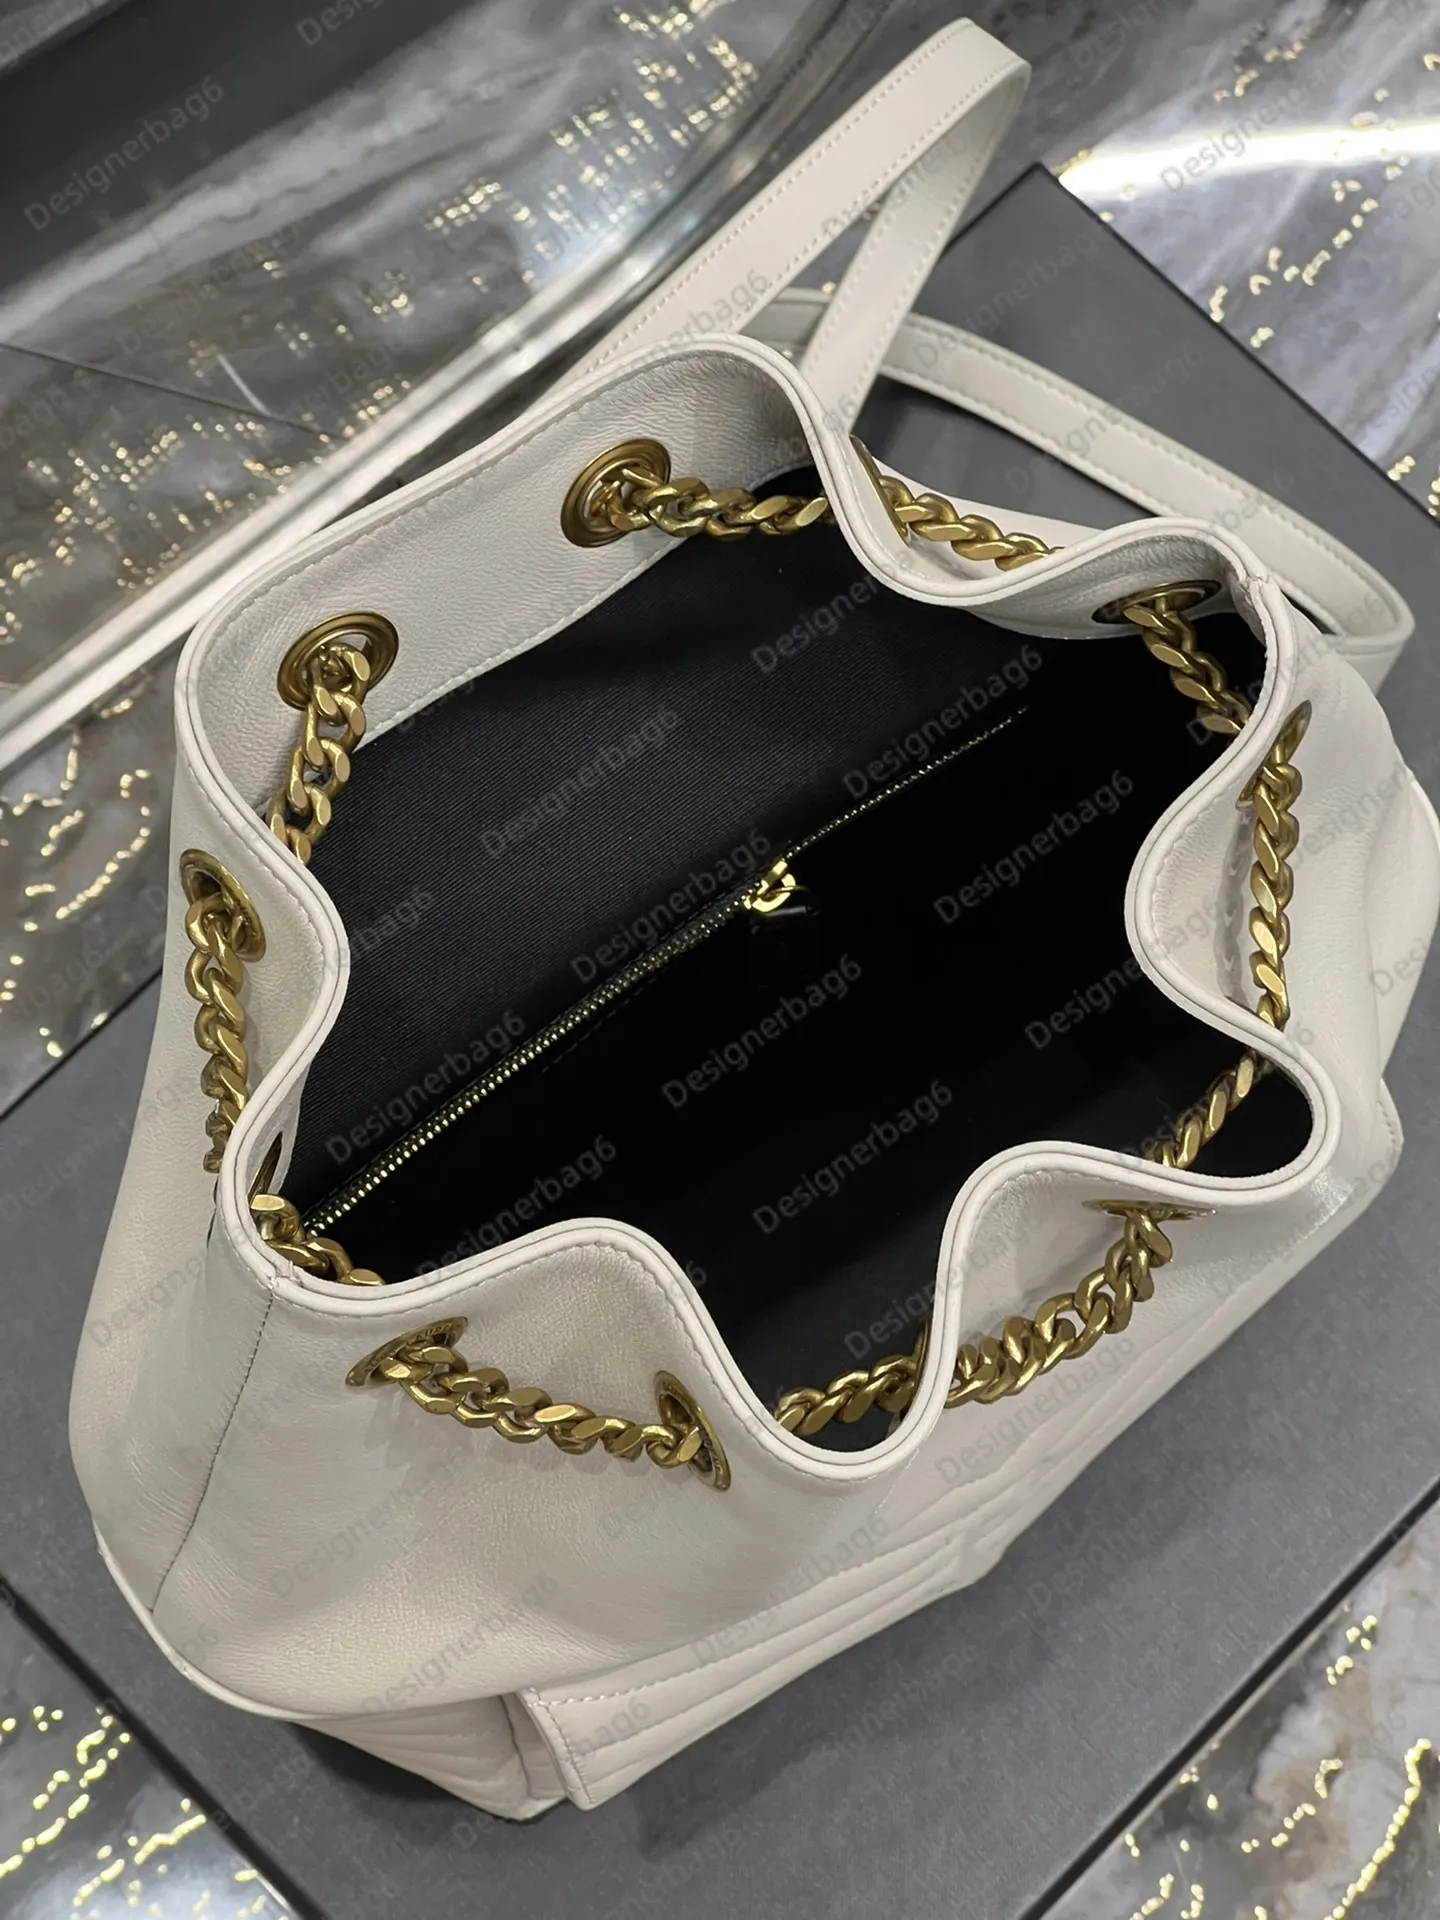 10A Ladies Fashion Designe Luxury Joe Quilting рюкзак для сумки для плеч сумочка с поперечным качеством высококачественное оборудование и импортный материал для кожи